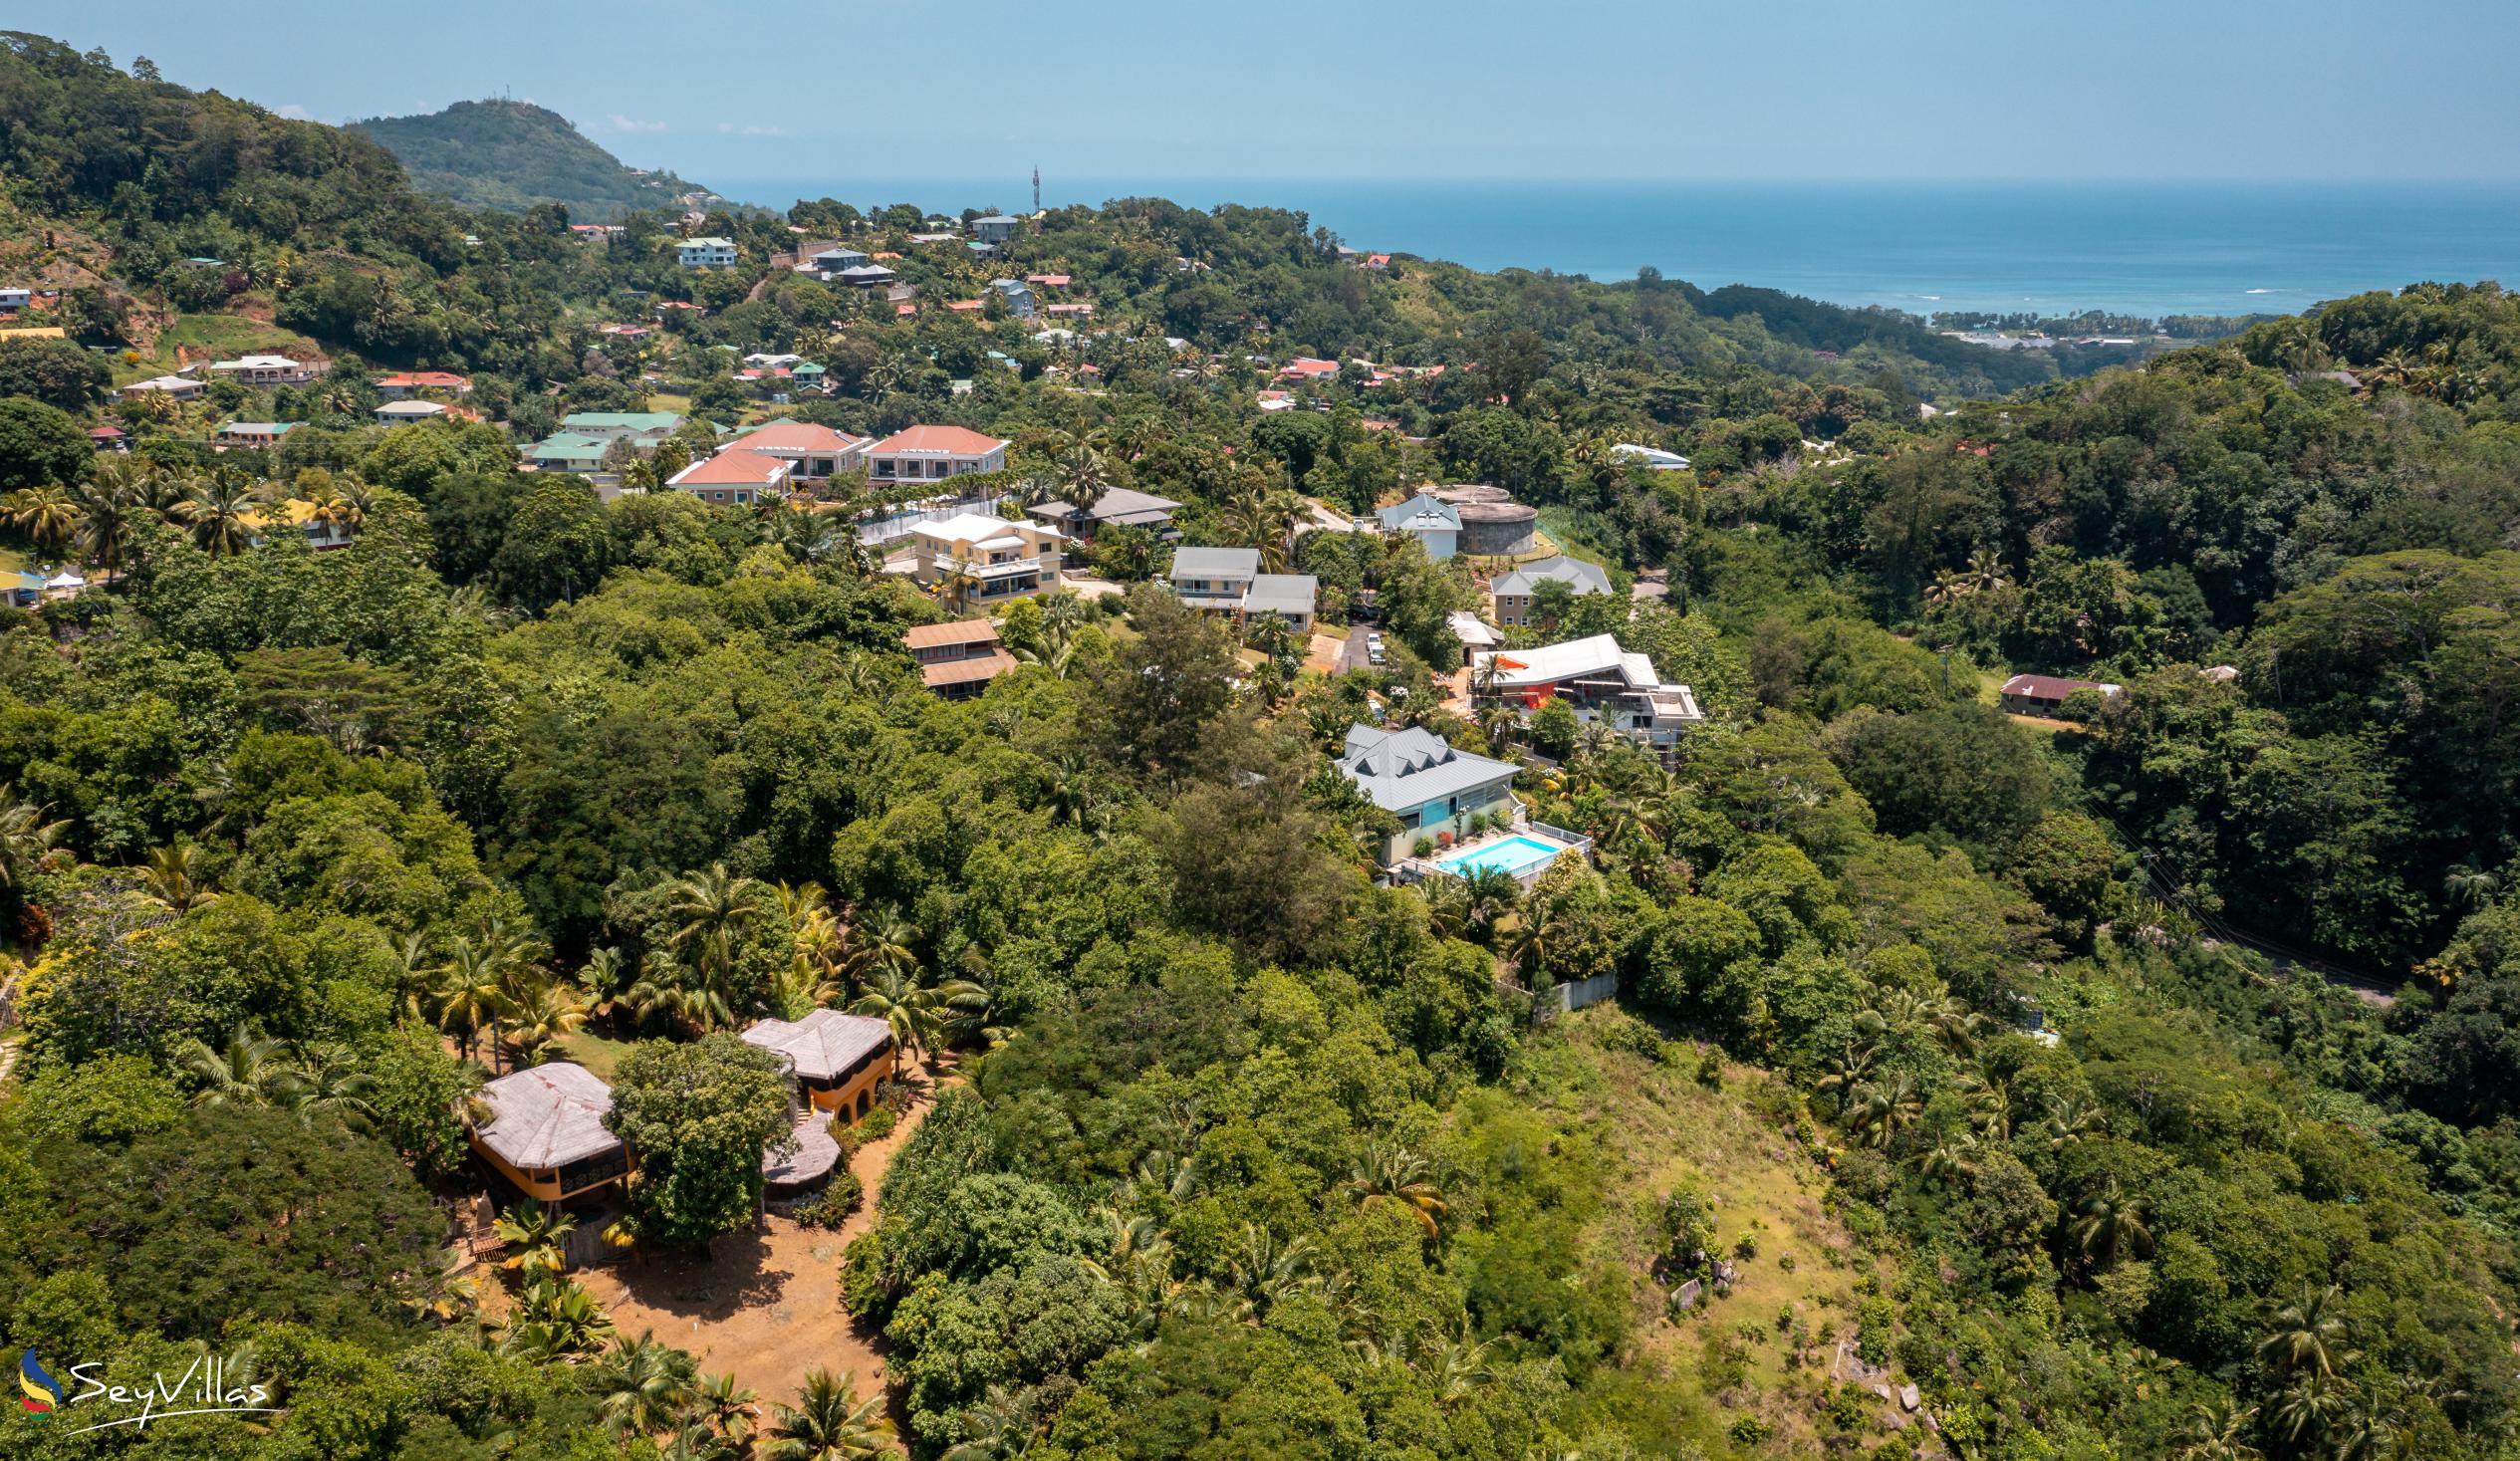 Foto 28: Residence Monte Cristo - Posizione - Mahé (Seychelles)